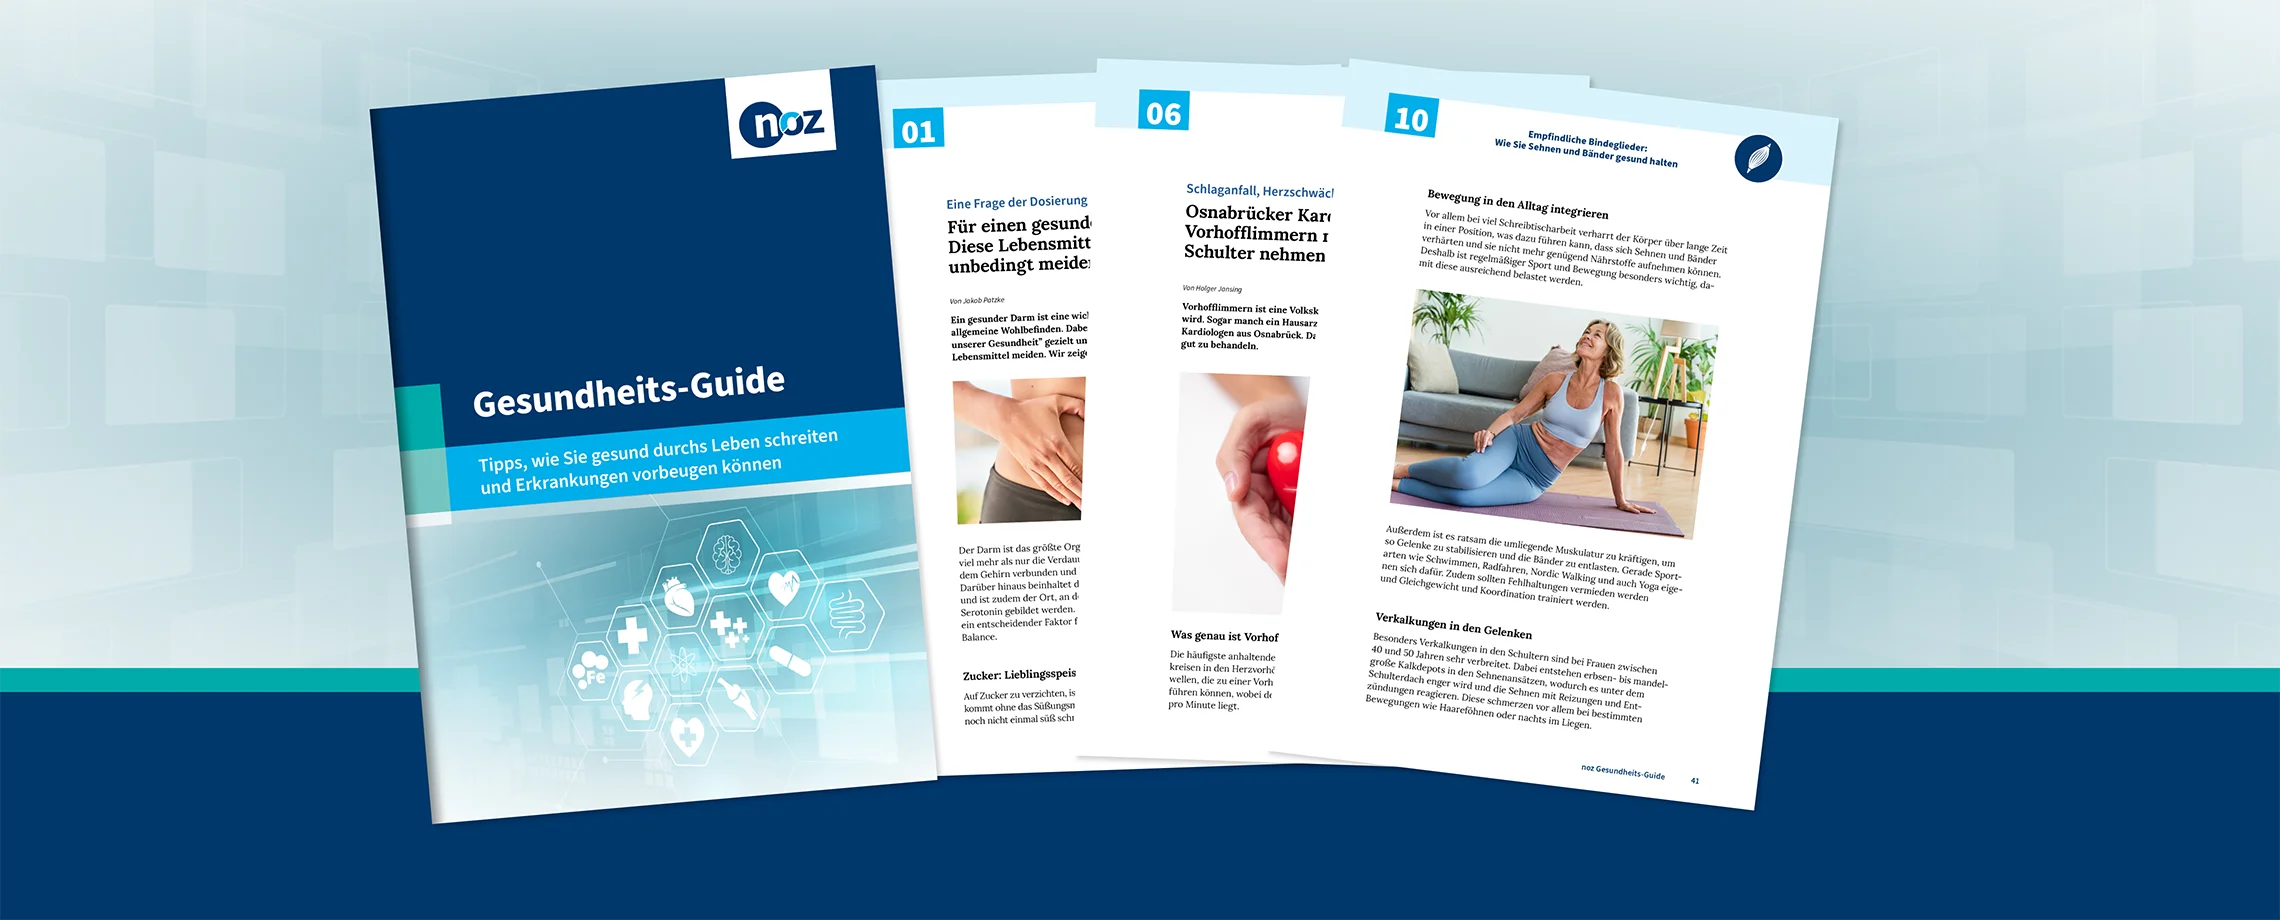 Den Gesundheits-Guide als PDF sichern und herausfinden, wie sie Erkrankungen effektiv vorbeugen können.